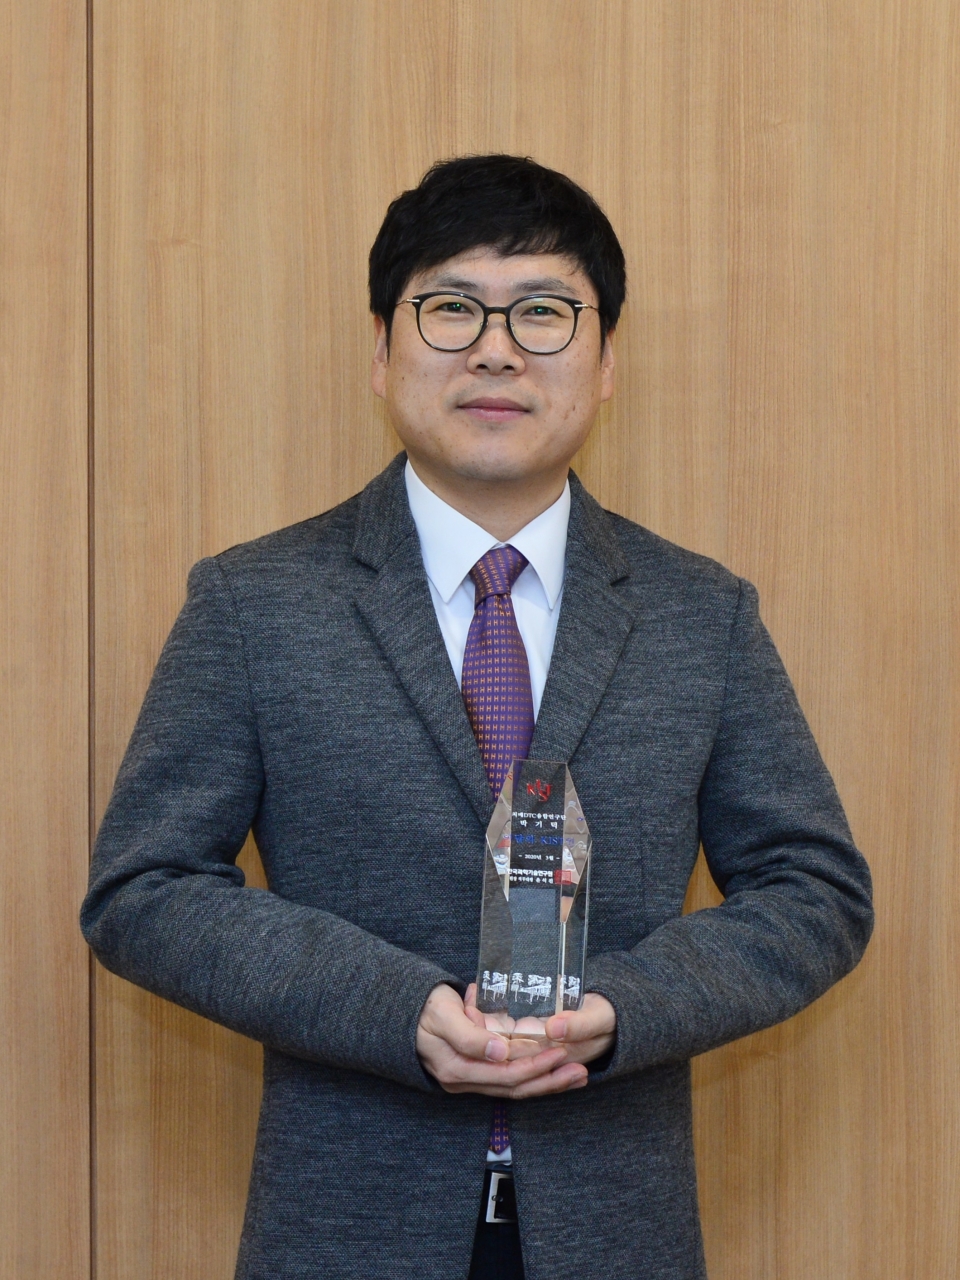 3월. 이달의 KIST인상을 수상한 KIST 박기덕 박사